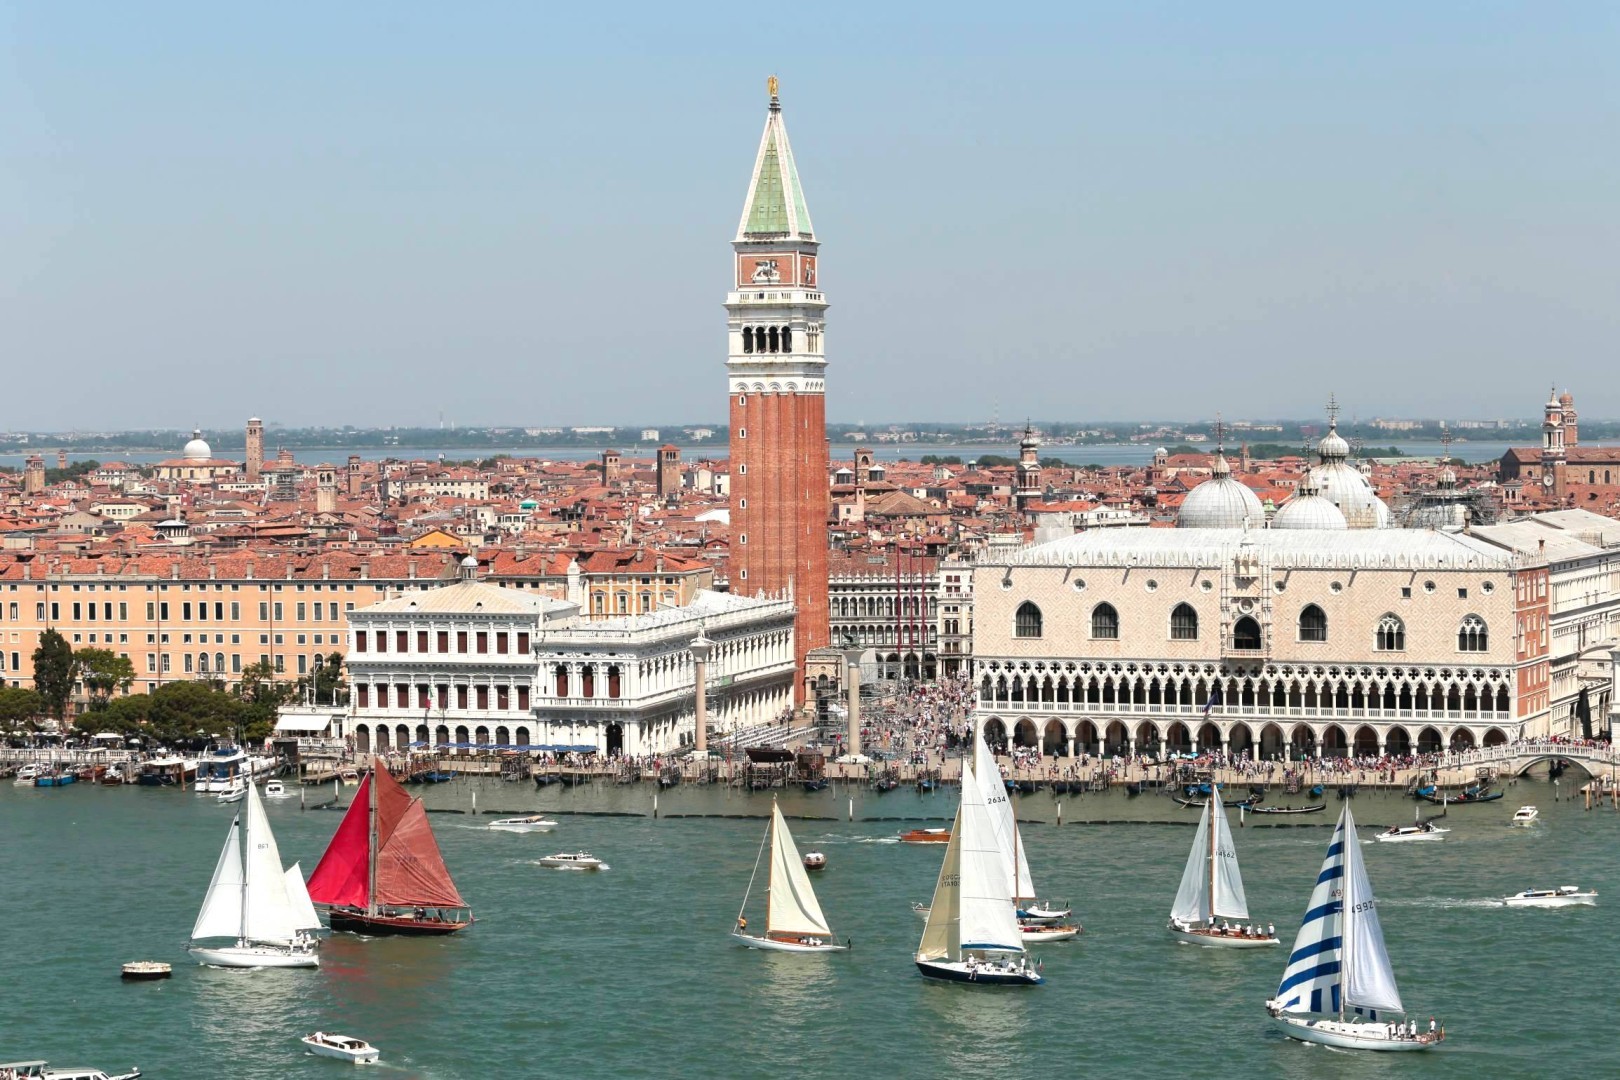 Grande vela d’Epoca a Venezia per il Trofeo Principato di Monaco